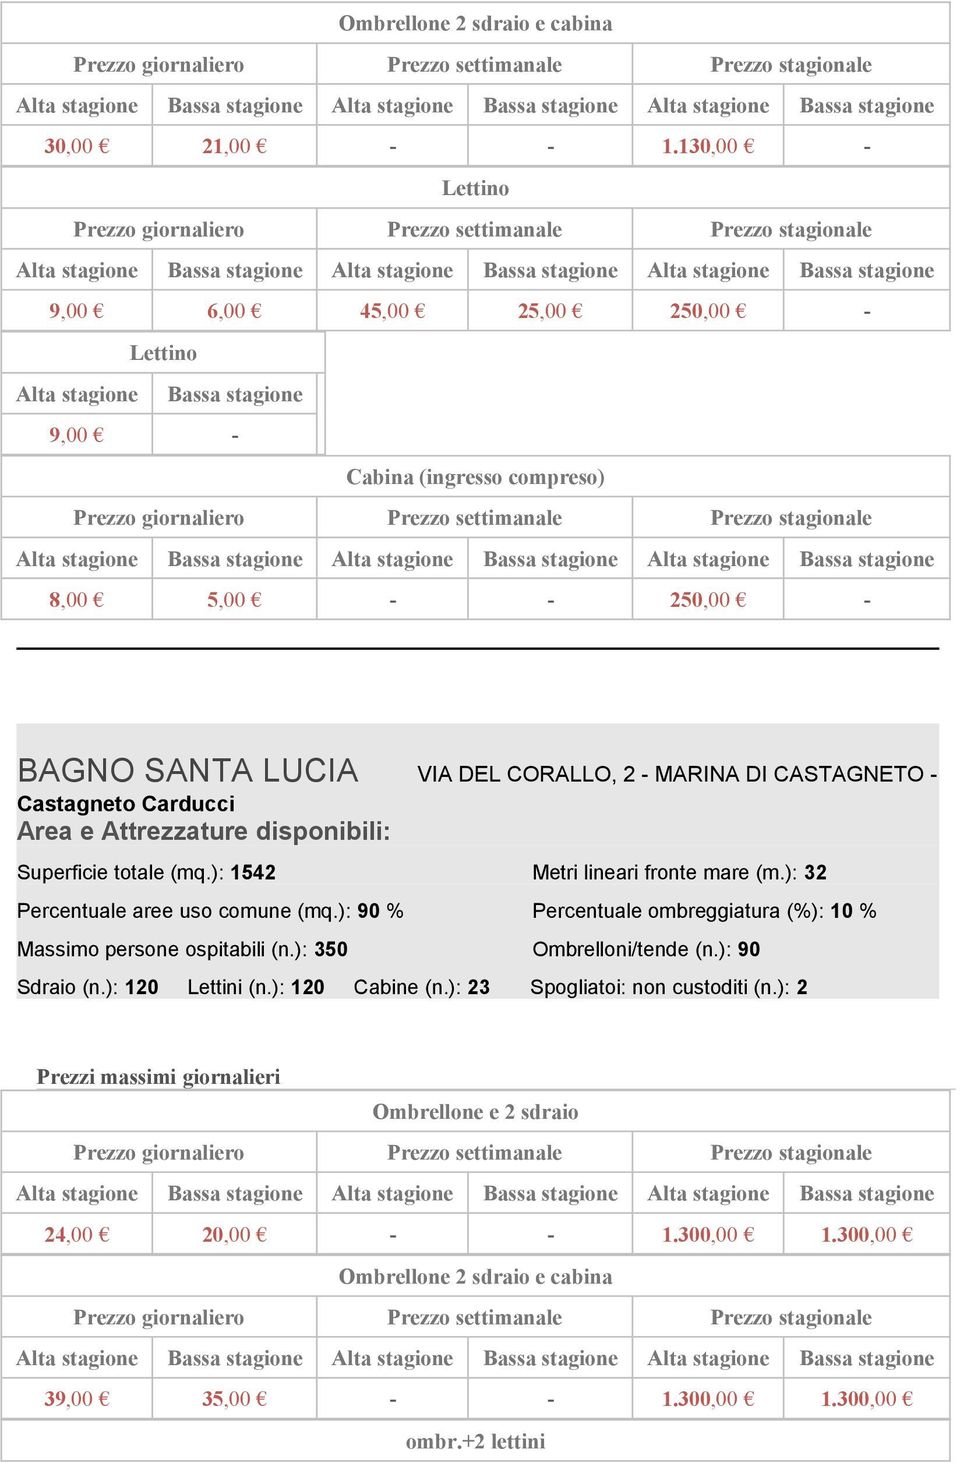 DI CASTAGNETO - Castagneto Carducci Superficie totale (mq.): 1542 Metri lineari fronte mare (m.): 32 Percentuale aree uso comune (mq.